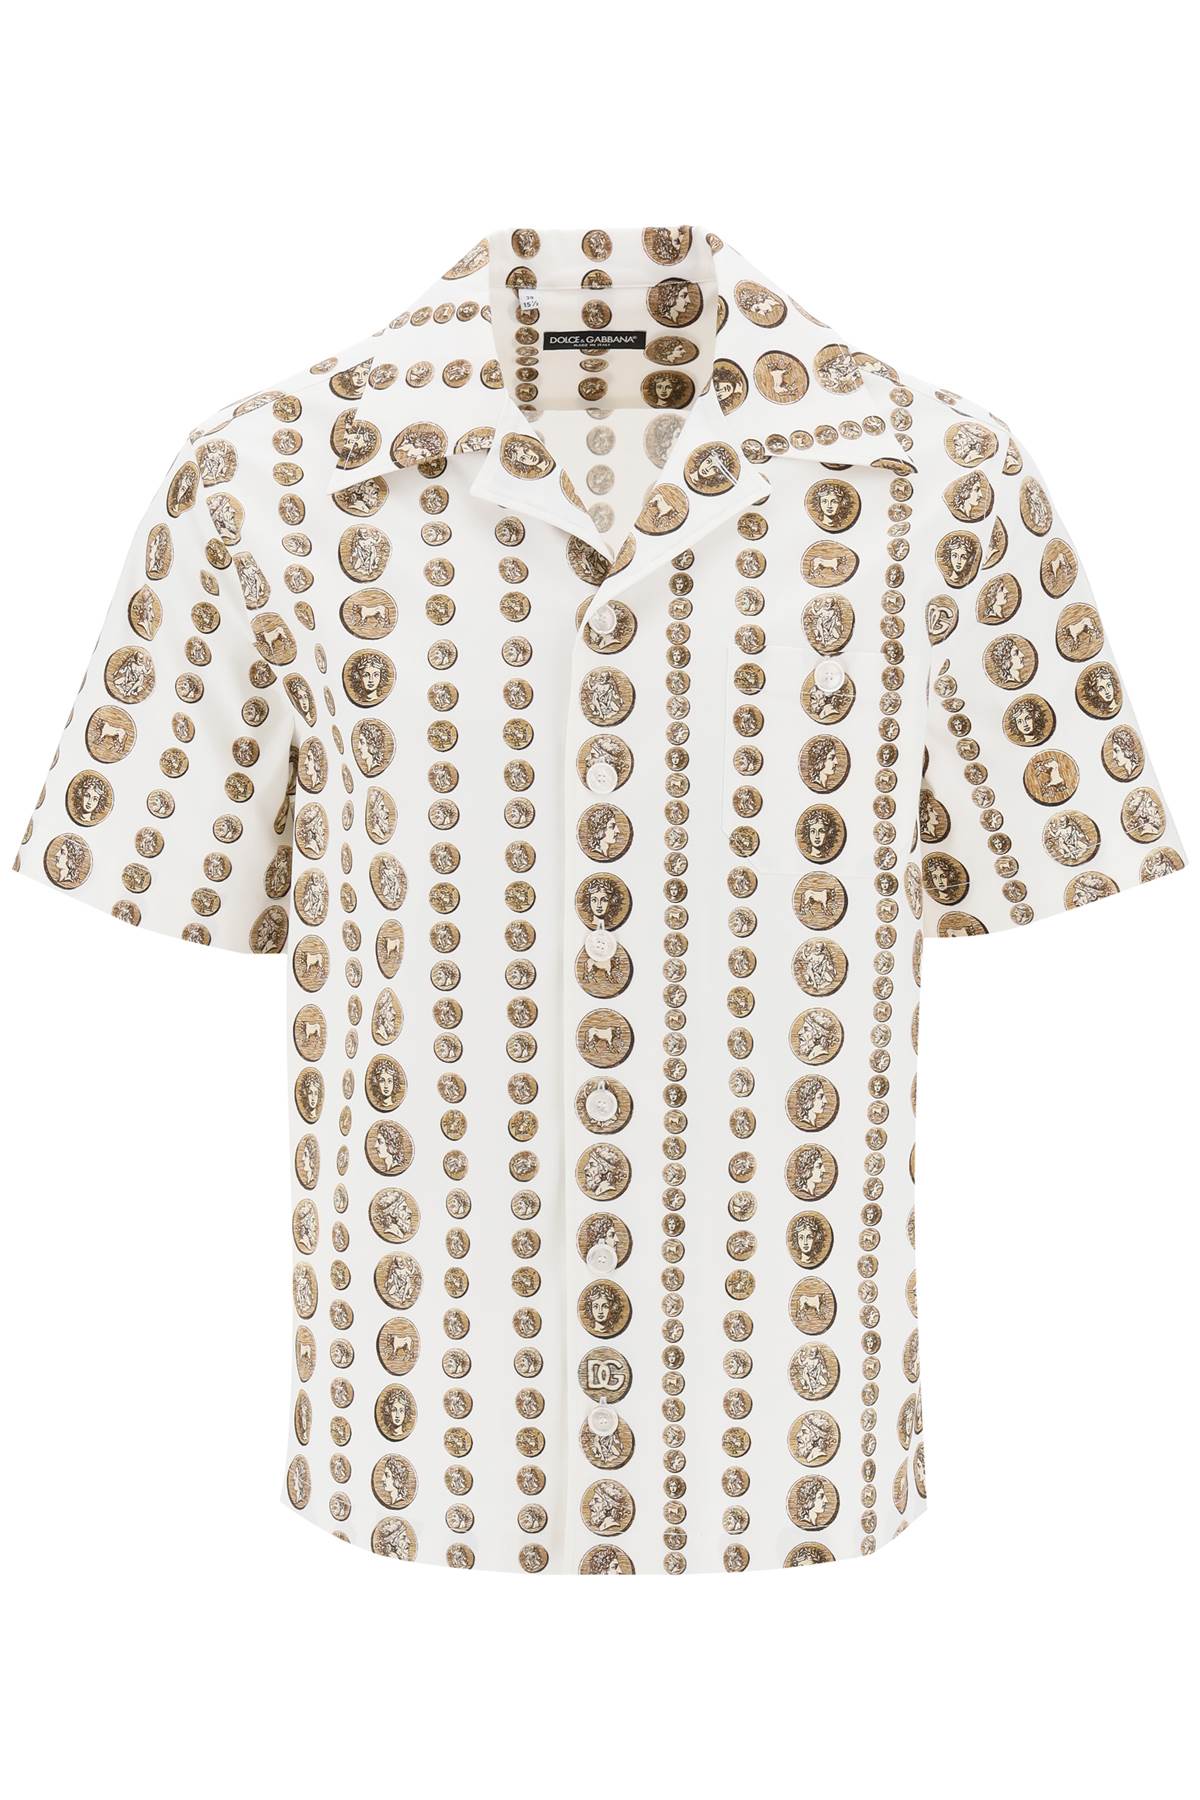 Dolce & gabbana coin print short sleeve shirt-0